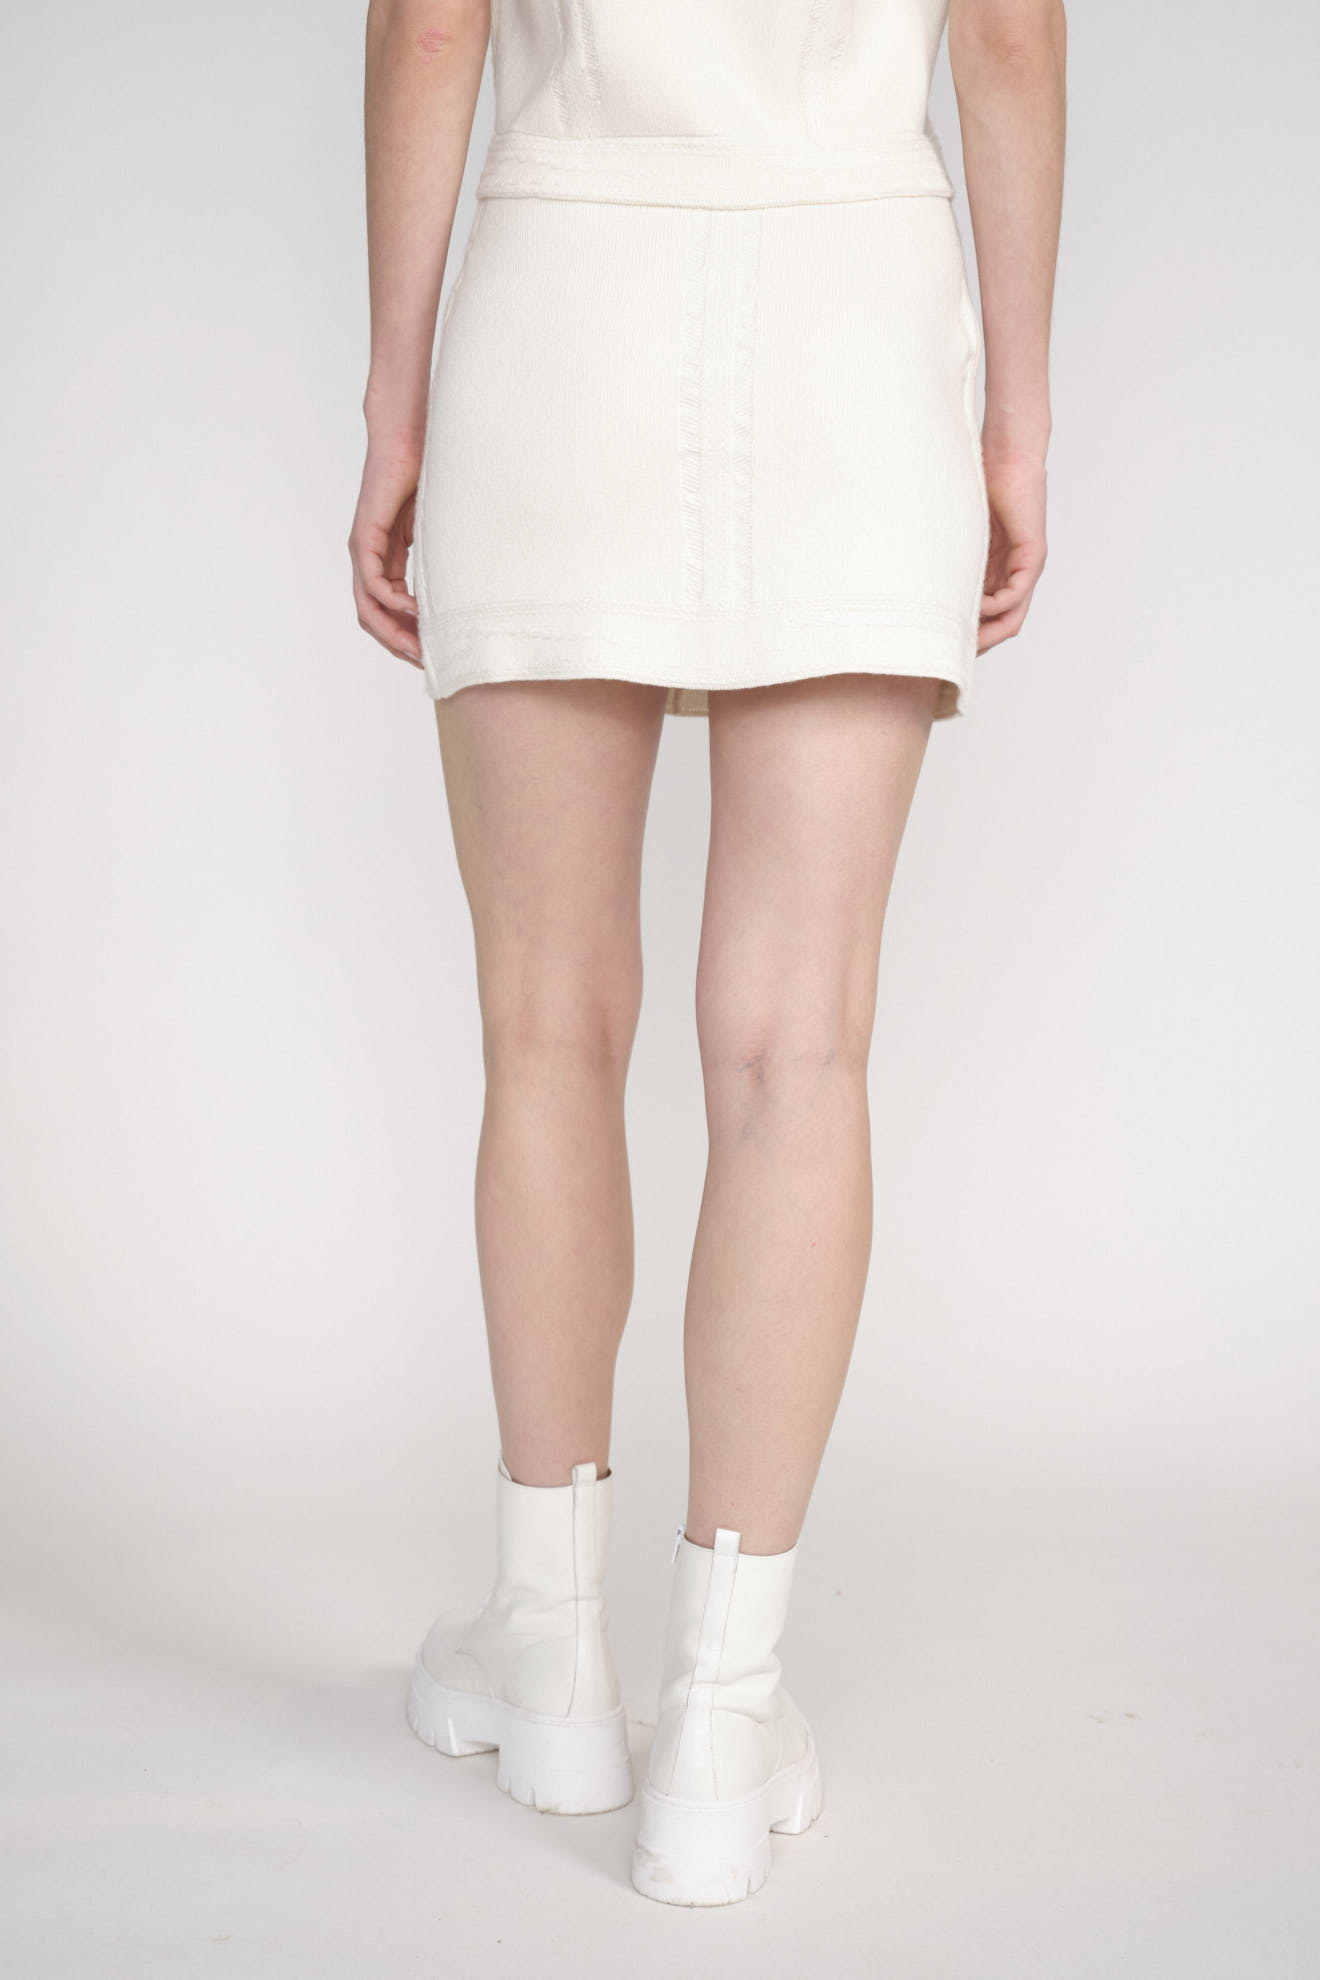 Barrie Falda vaquera de cachemira y algodón - Minifalda de cachemira blanco M